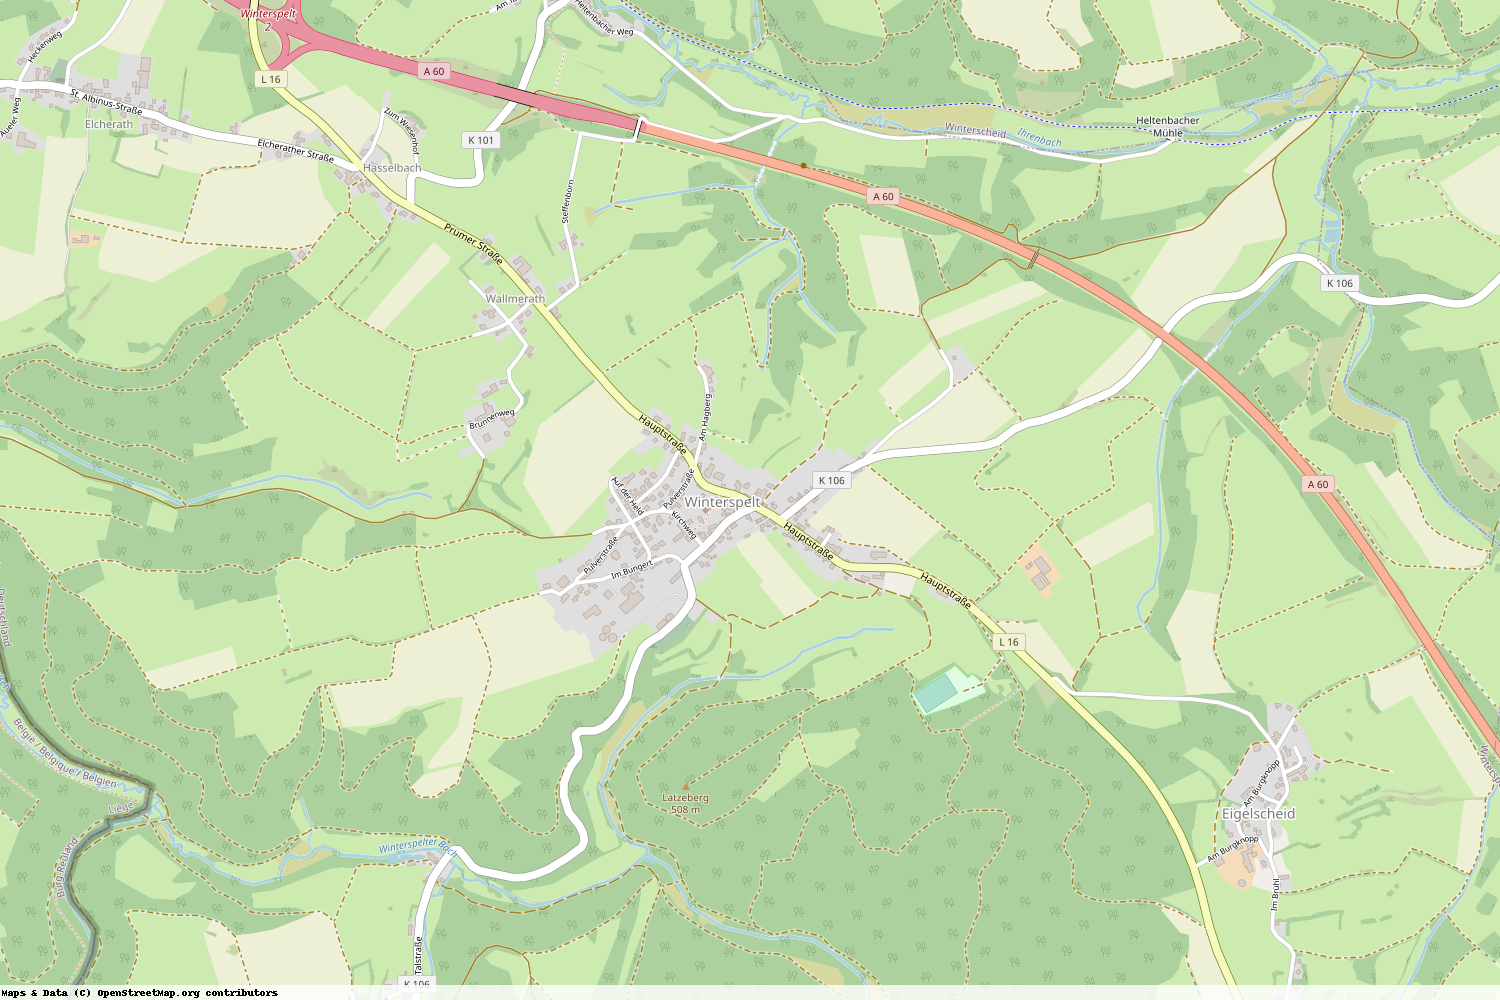 Ist gerade Stromausfall in Rheinland-Pfalz - Eifelkreis Bitburg-Prüm - Winterspelt?